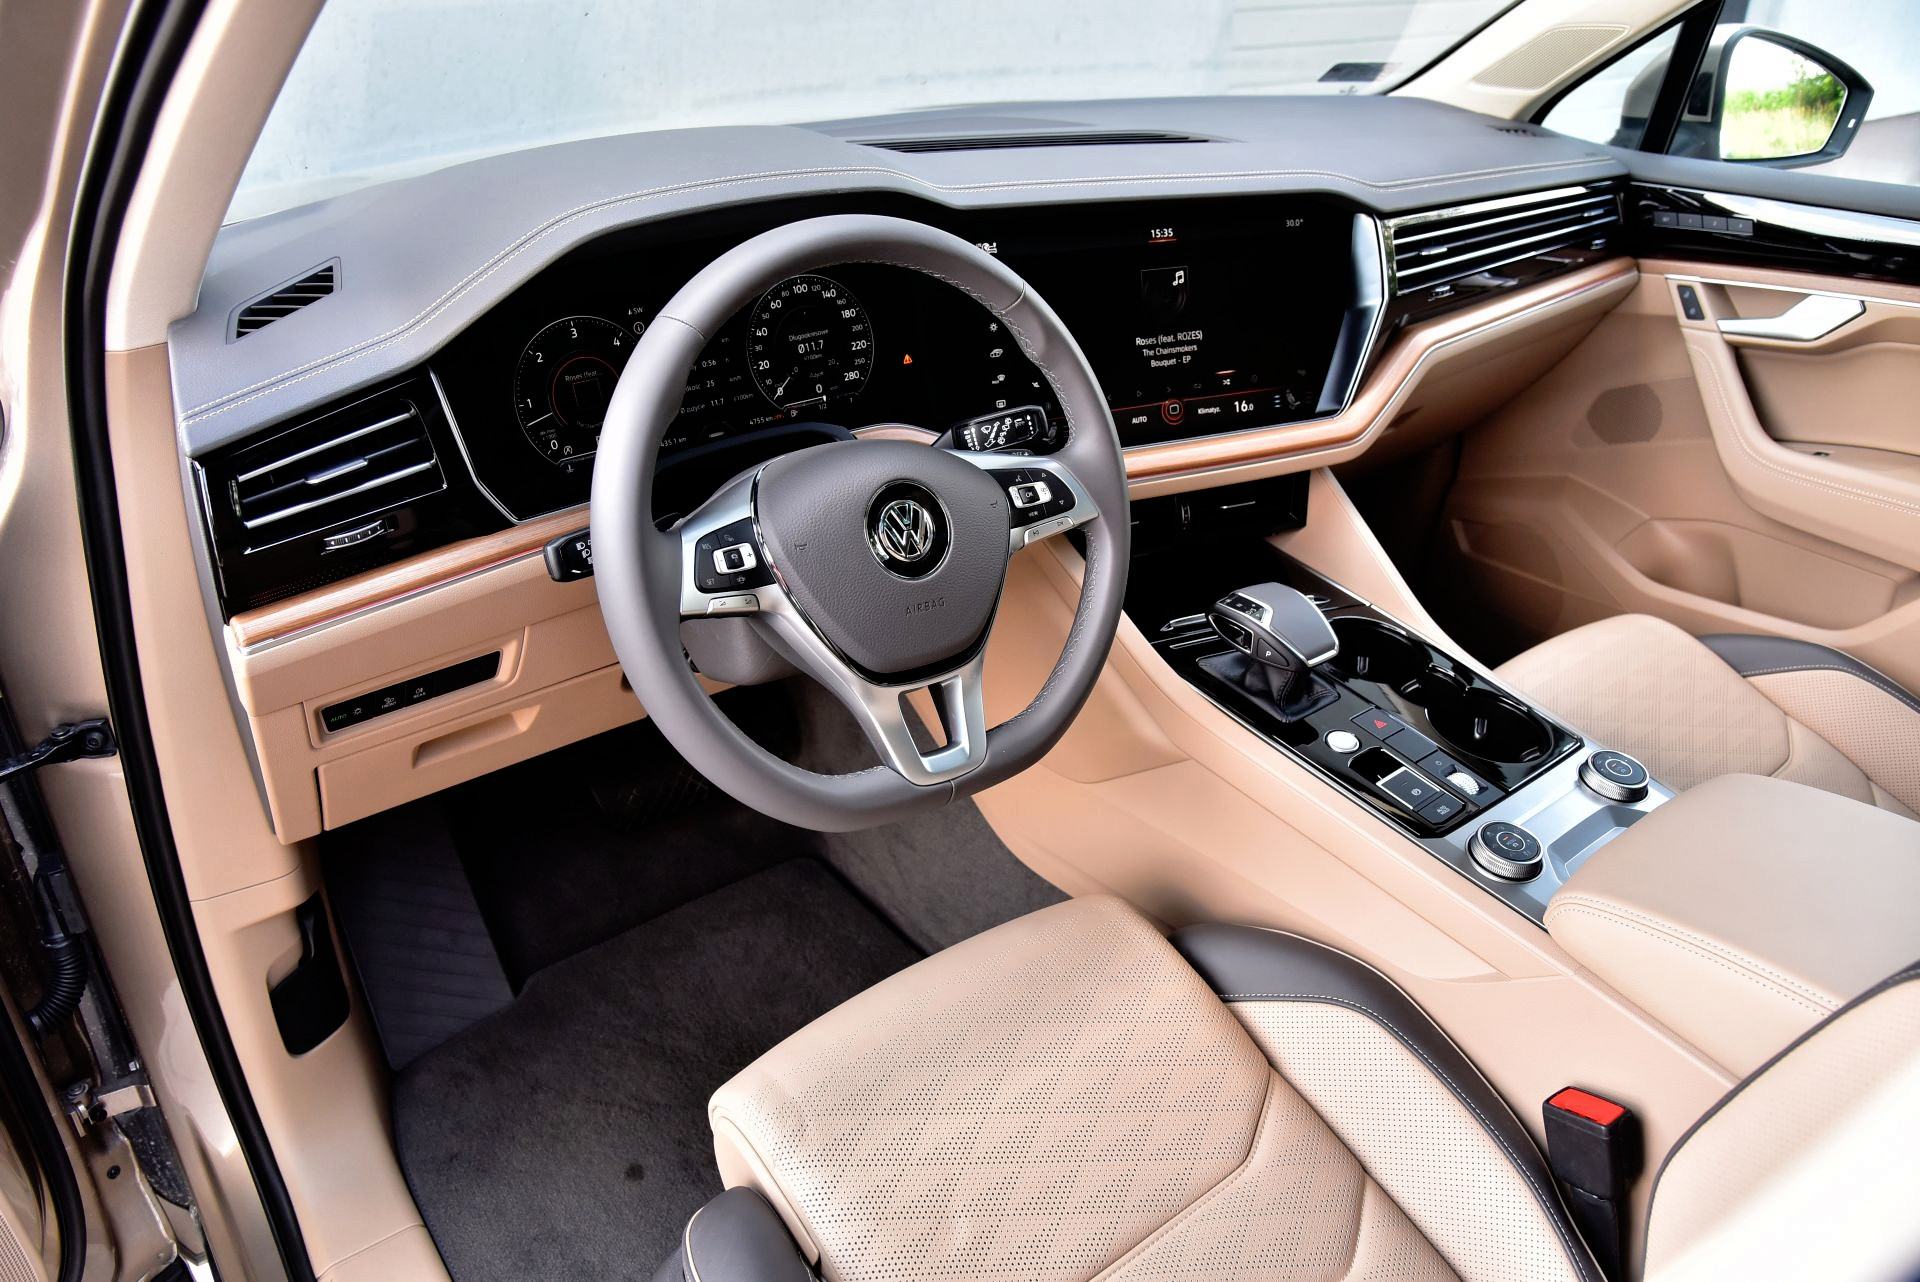 В категории «аналог» интерьер Volkswagen отличается хорошим качеством отделки и облицовки, а также большими мягкими отсеками для хранения, а также широким диапазоном регулировки положения тандемного сиденья и рулевого колеса и обзором выше среднего с места водителя